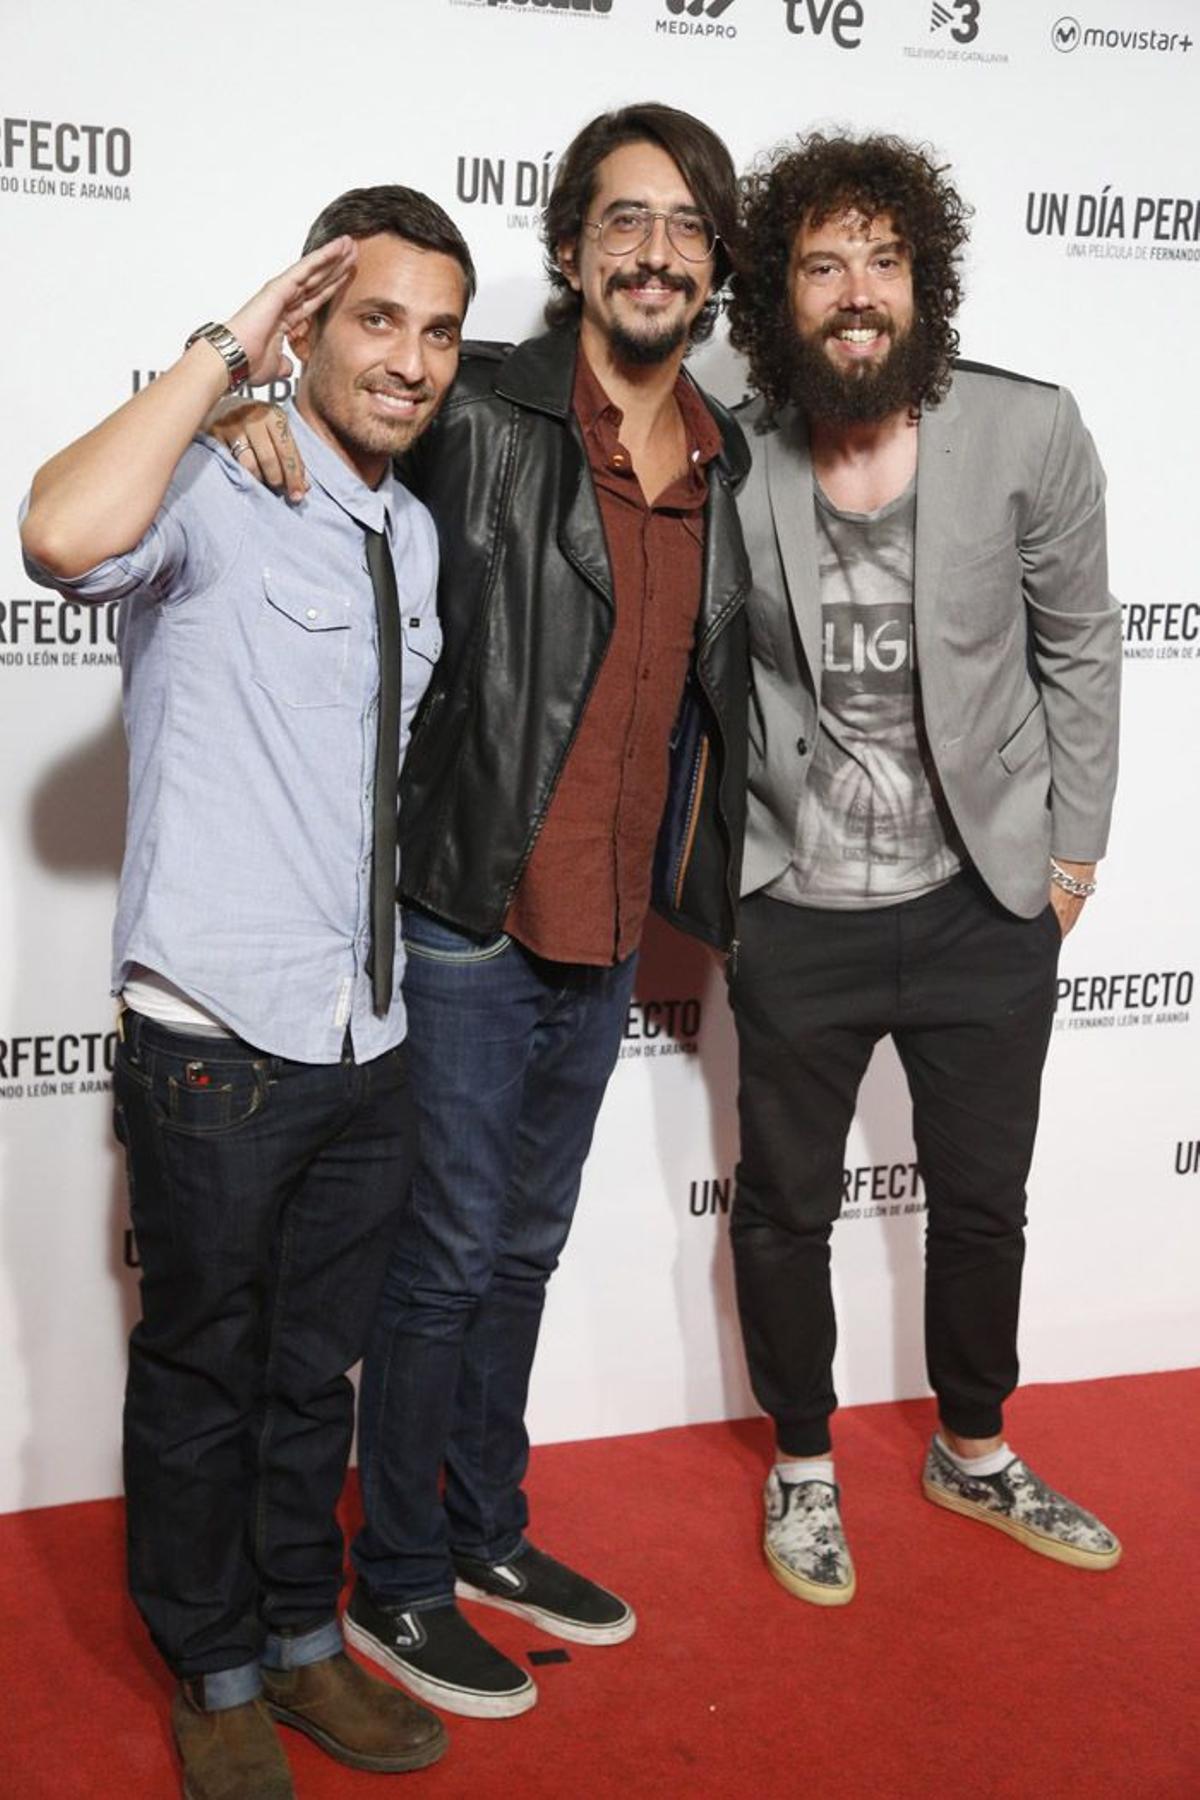 Juan Ibañez, Jorge Marron y Damian Moya en el estreno de 'Un día perfecto' en Madrid